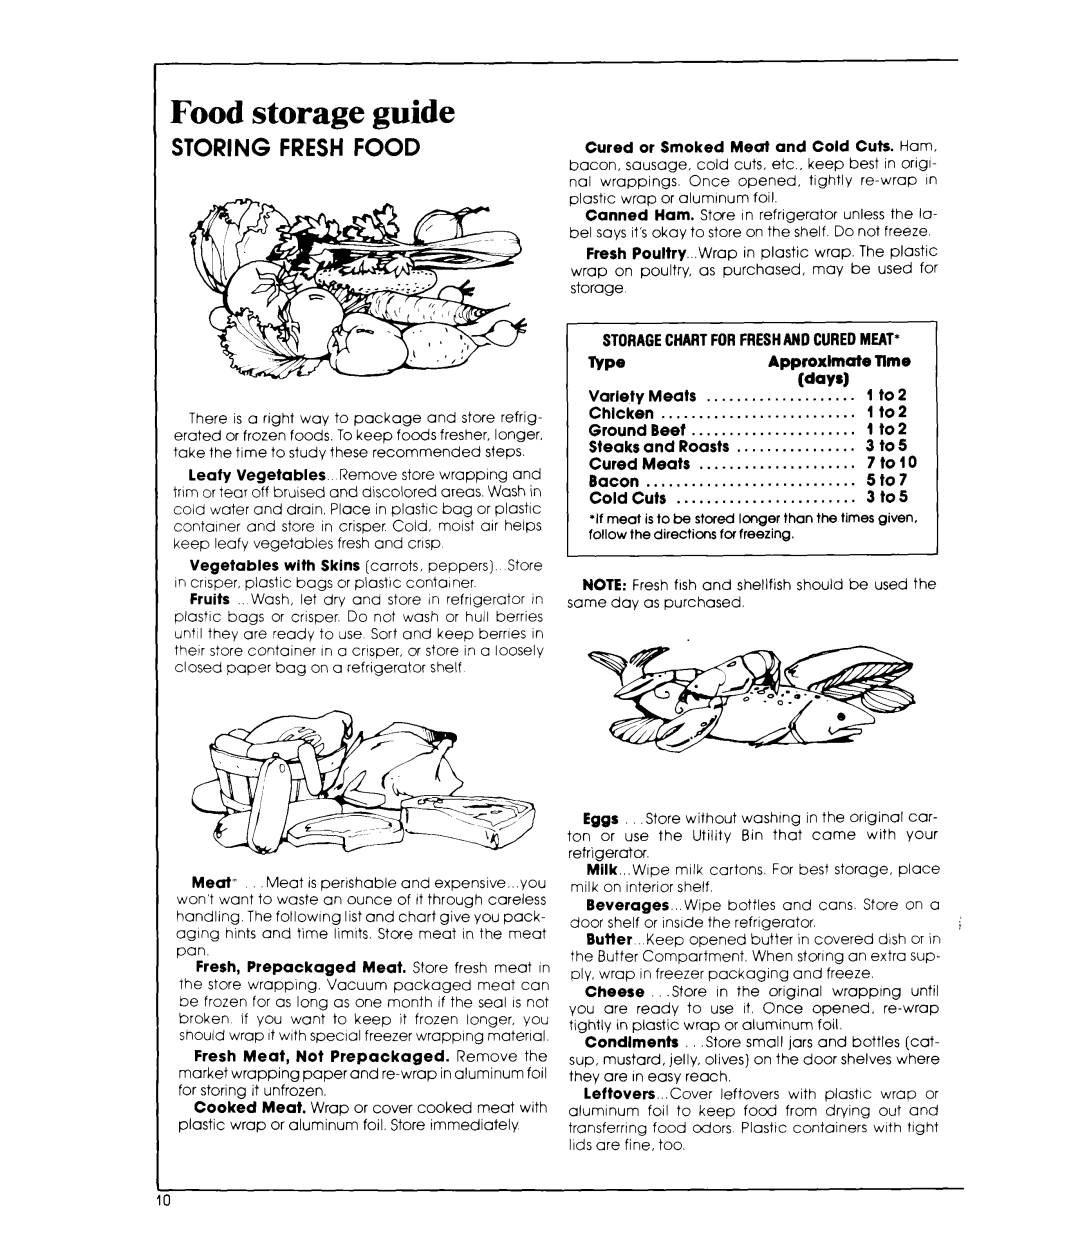 Whirlpool ETl7HK manual Food storage guide, Storing Fresh Food 